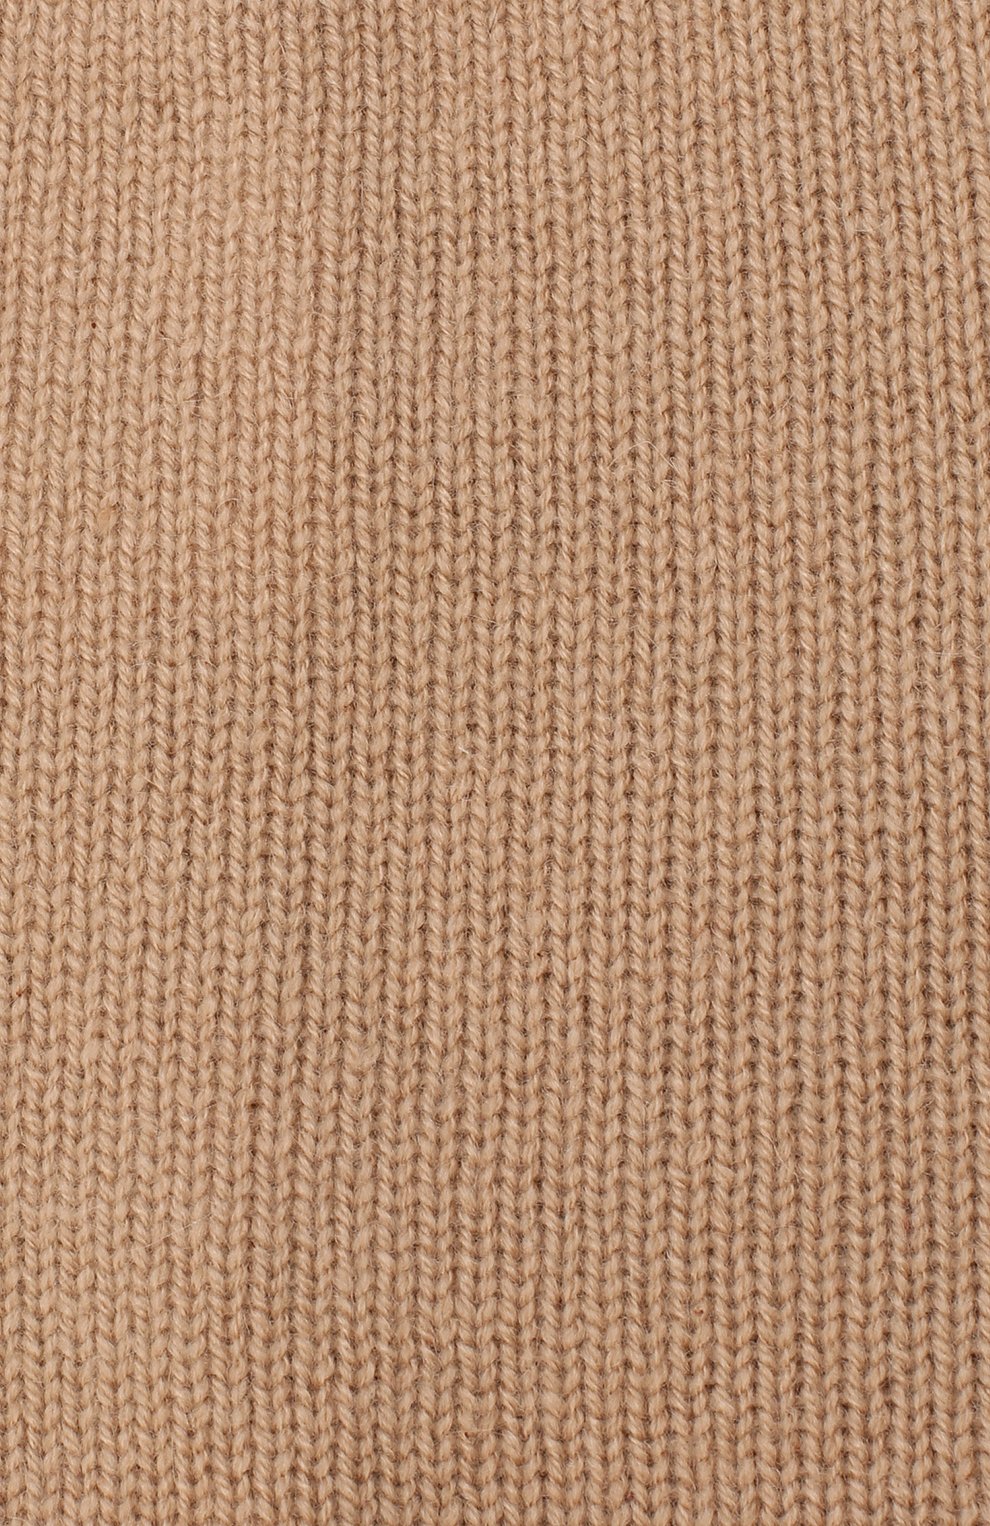 Женская кашемировая шапка FTC бежевого цвета, арт. 800-0970 | Фото 3 (Материал: Текстиль, Кашемир, Шерсть)